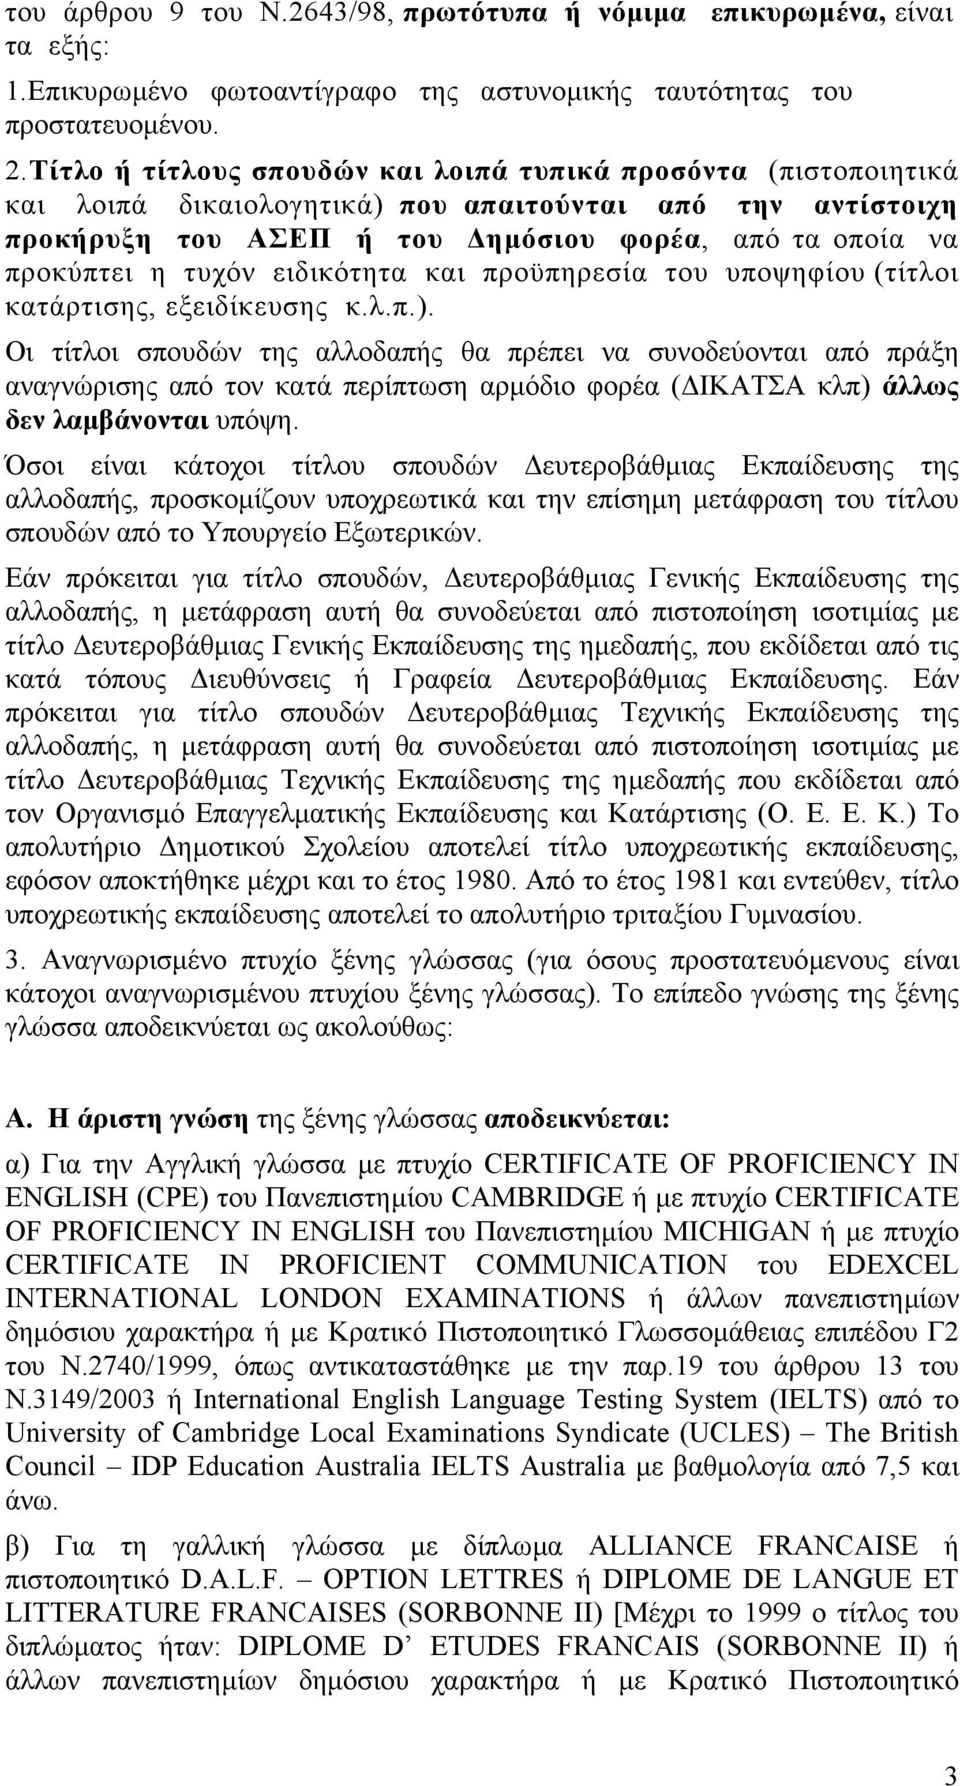 ειδικότητα και προϋπηρεσία του υποψηφίου (τίτλοι κατάρτισης, εξειδίκευσης κ.λ.π.).